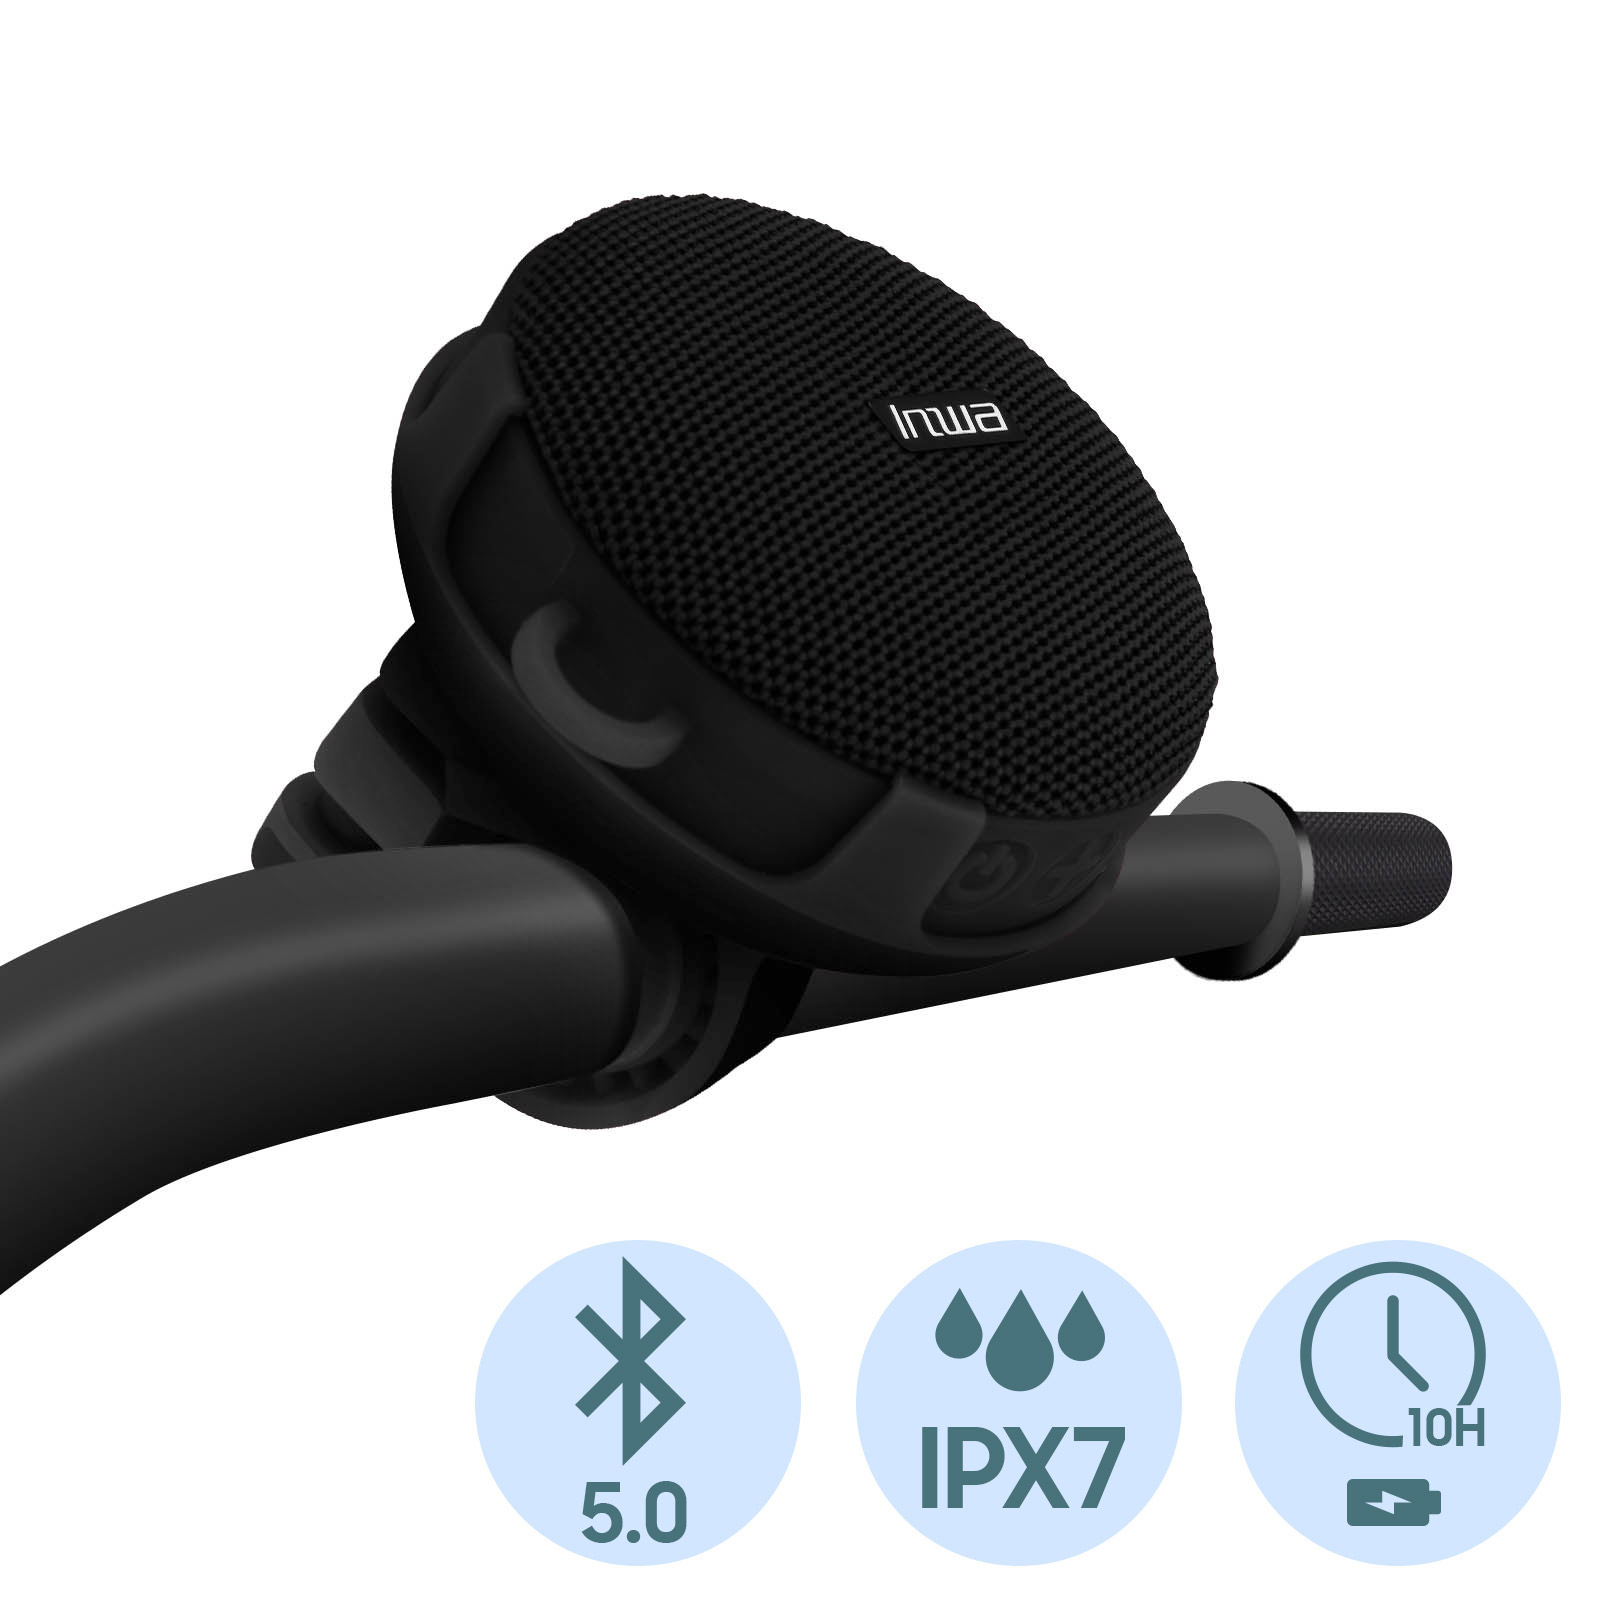 Kakusiga Enceinte Bluetooth Son Stéréo 3D & Puissant - Flame Light